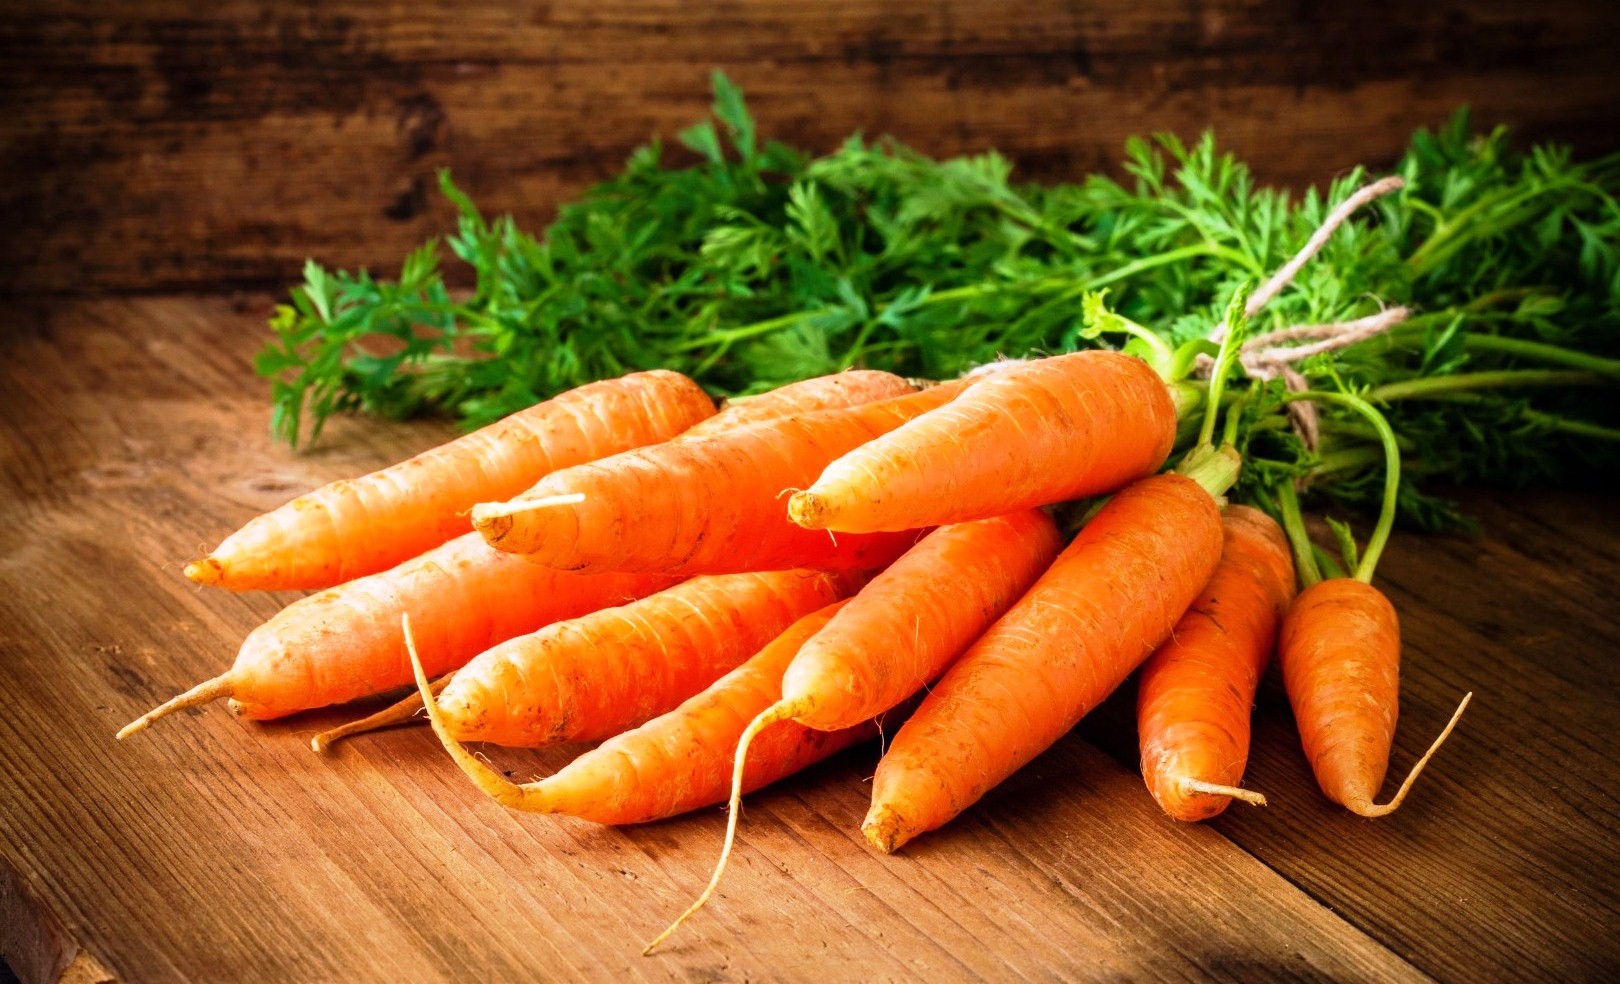 Результат пошуку зображень за запитом "морковь"